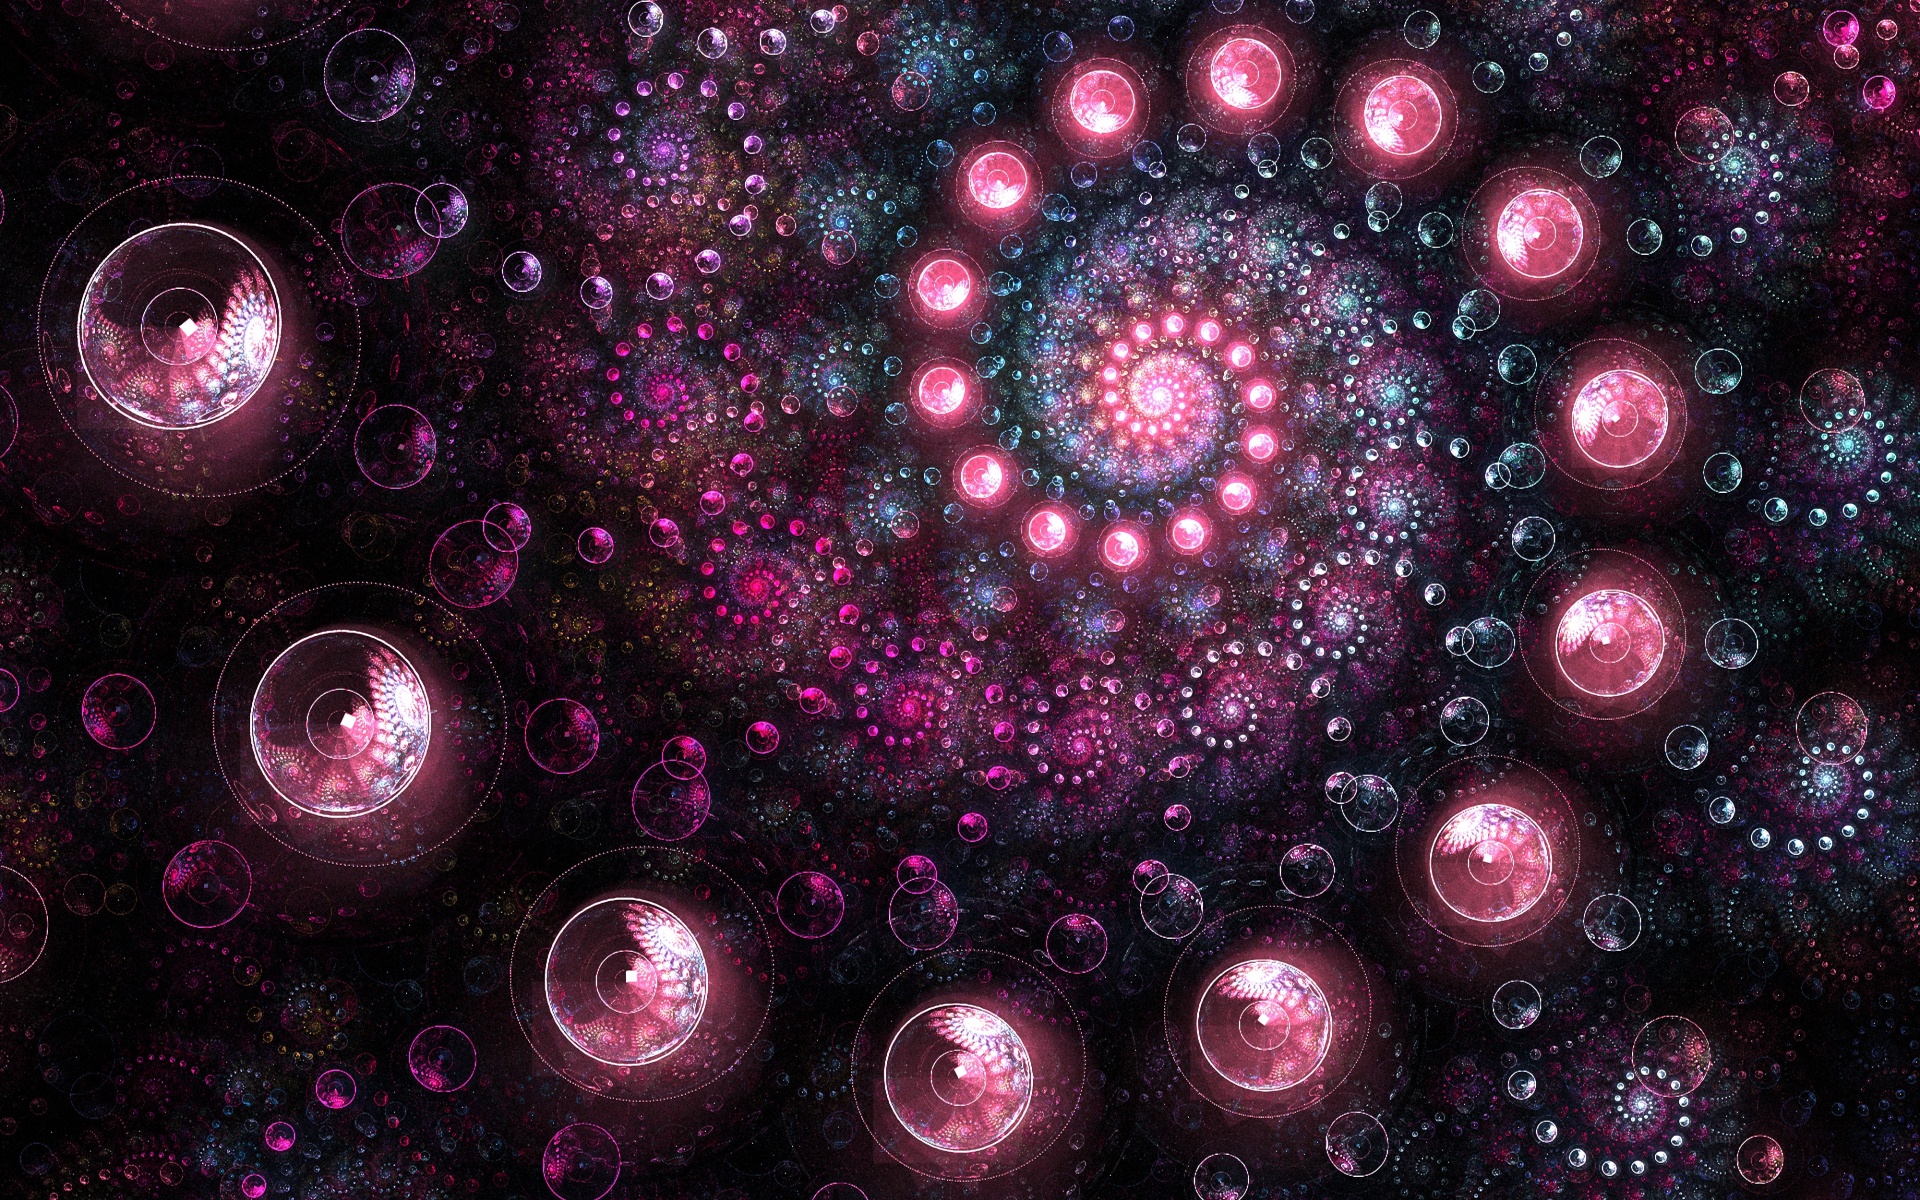 Swirl Art by AirElephant